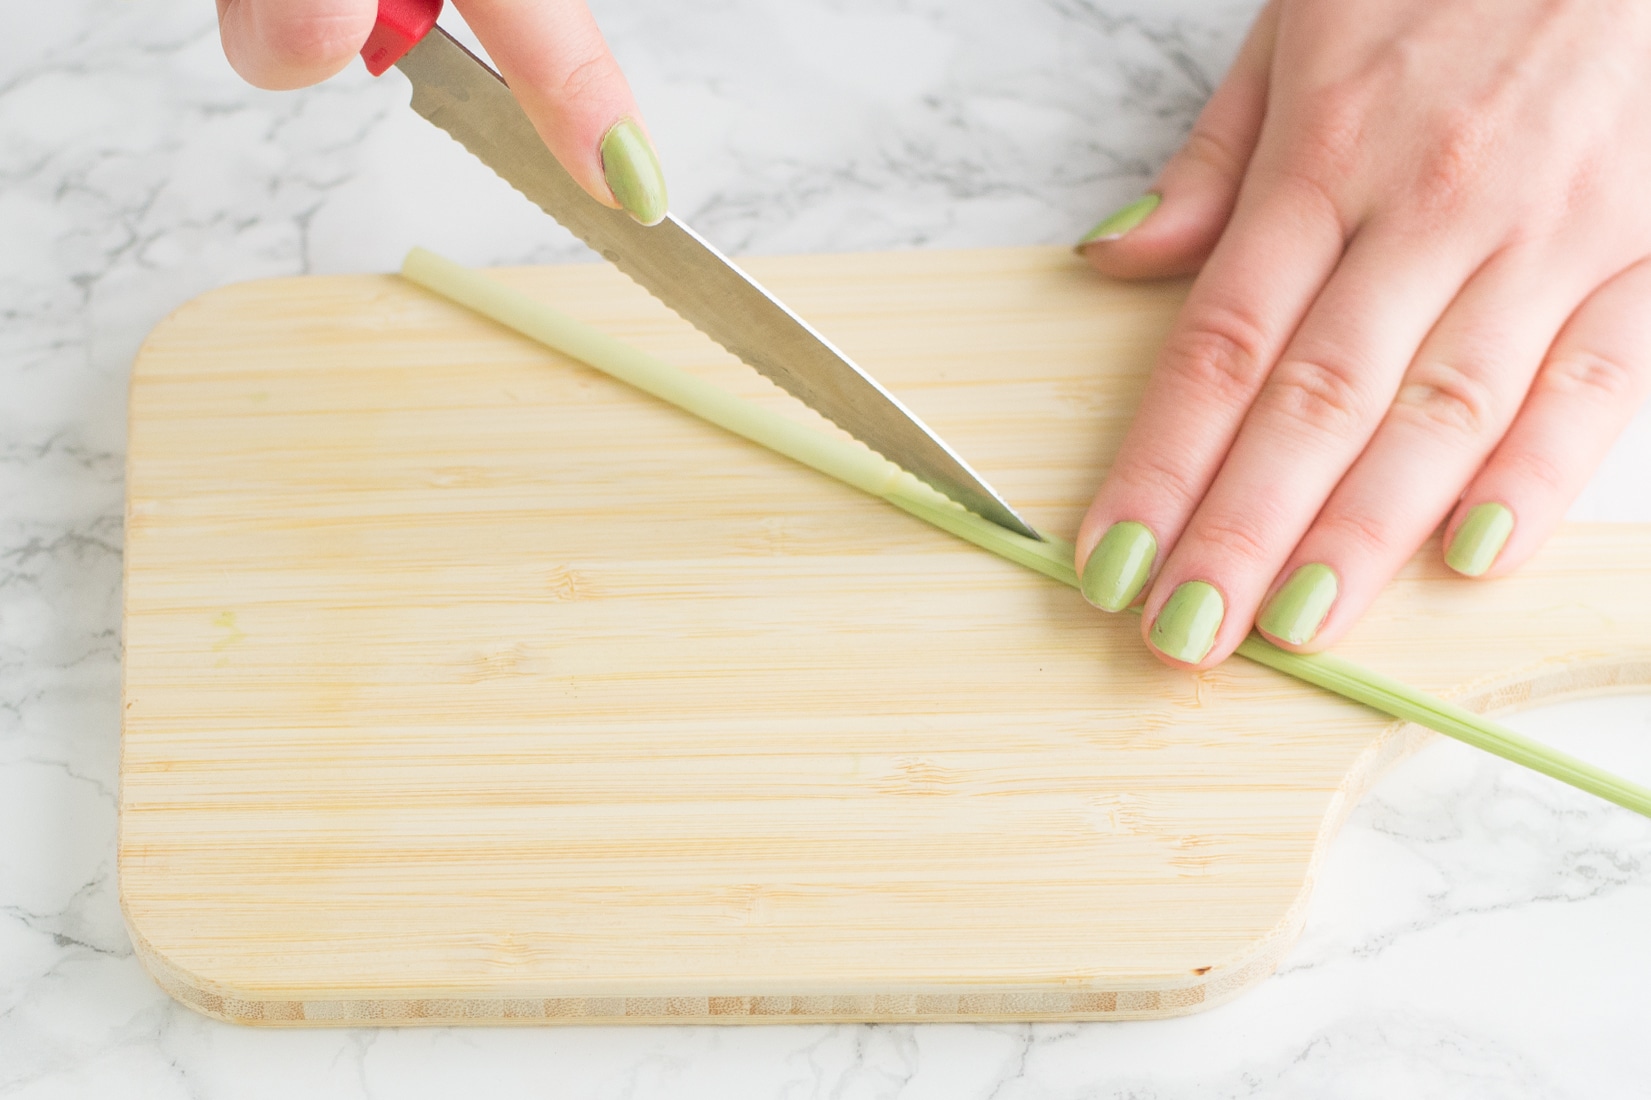 hand cutting lemongrass on wooden cutting board